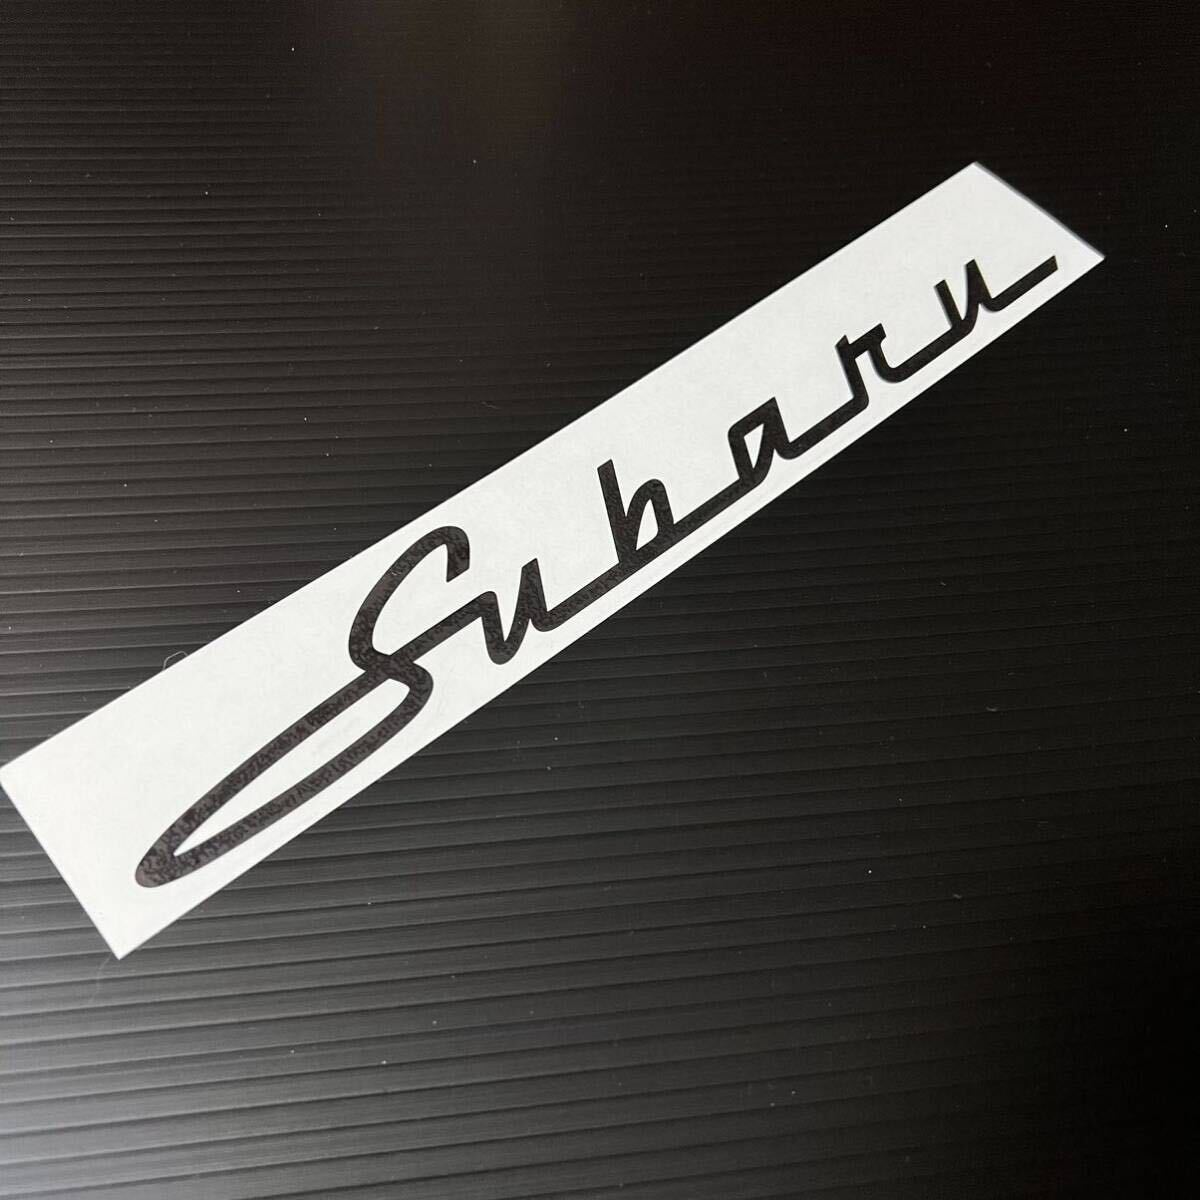 [28cmMk] retro style Subaru разрезные наклейки матовый чёрный custom 